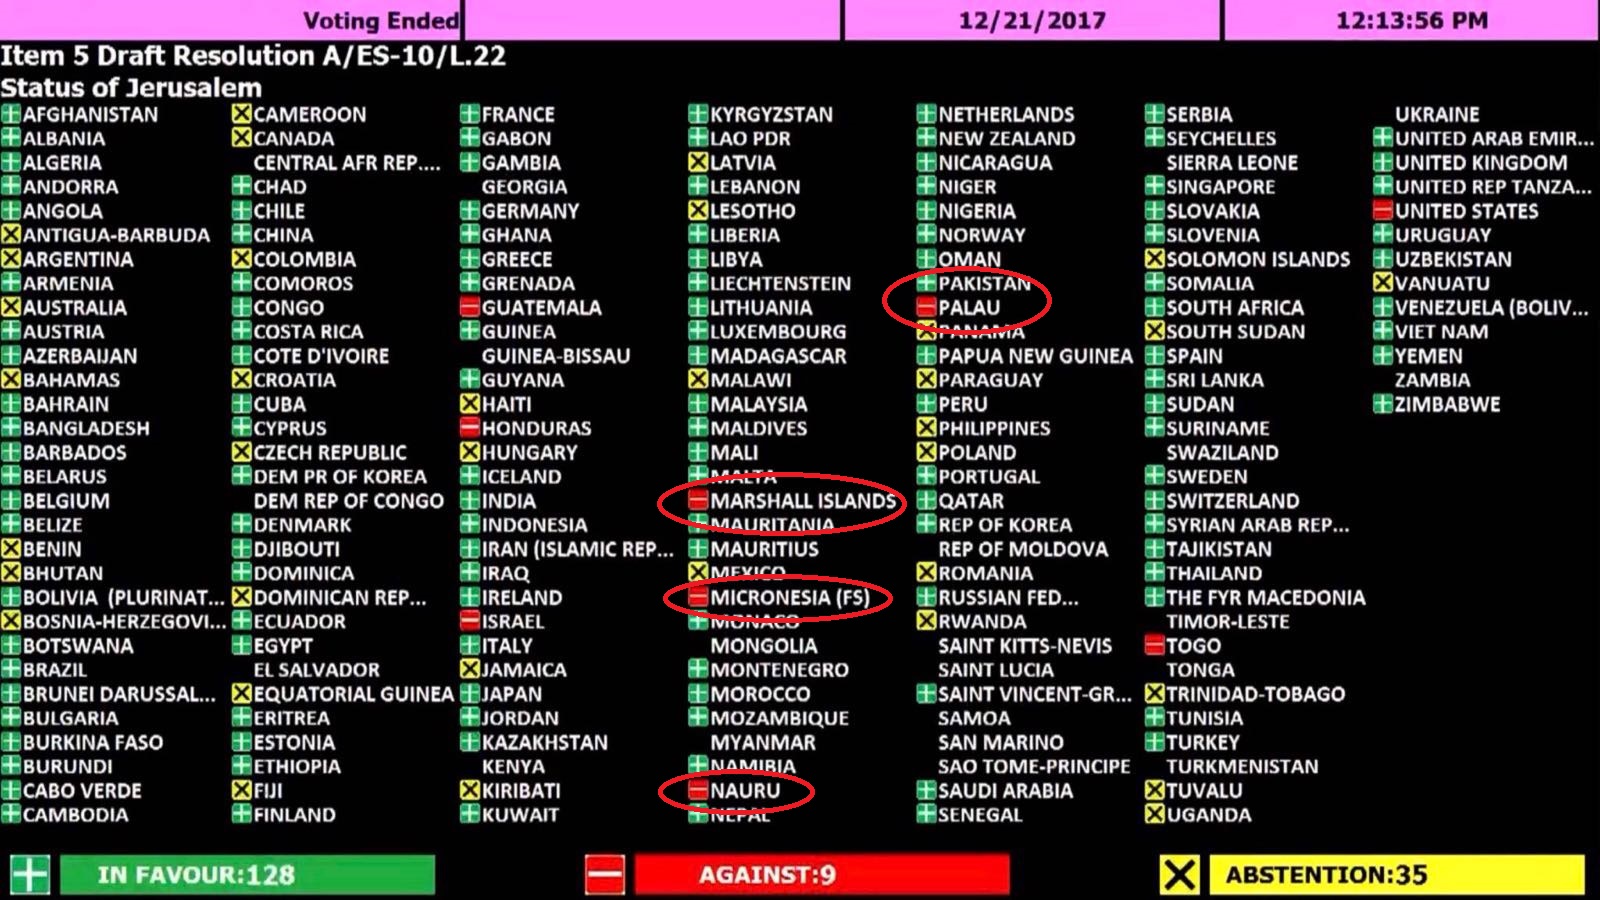 لوحة التصويت لصالح القدس الشريف فى الأمم المتحدة